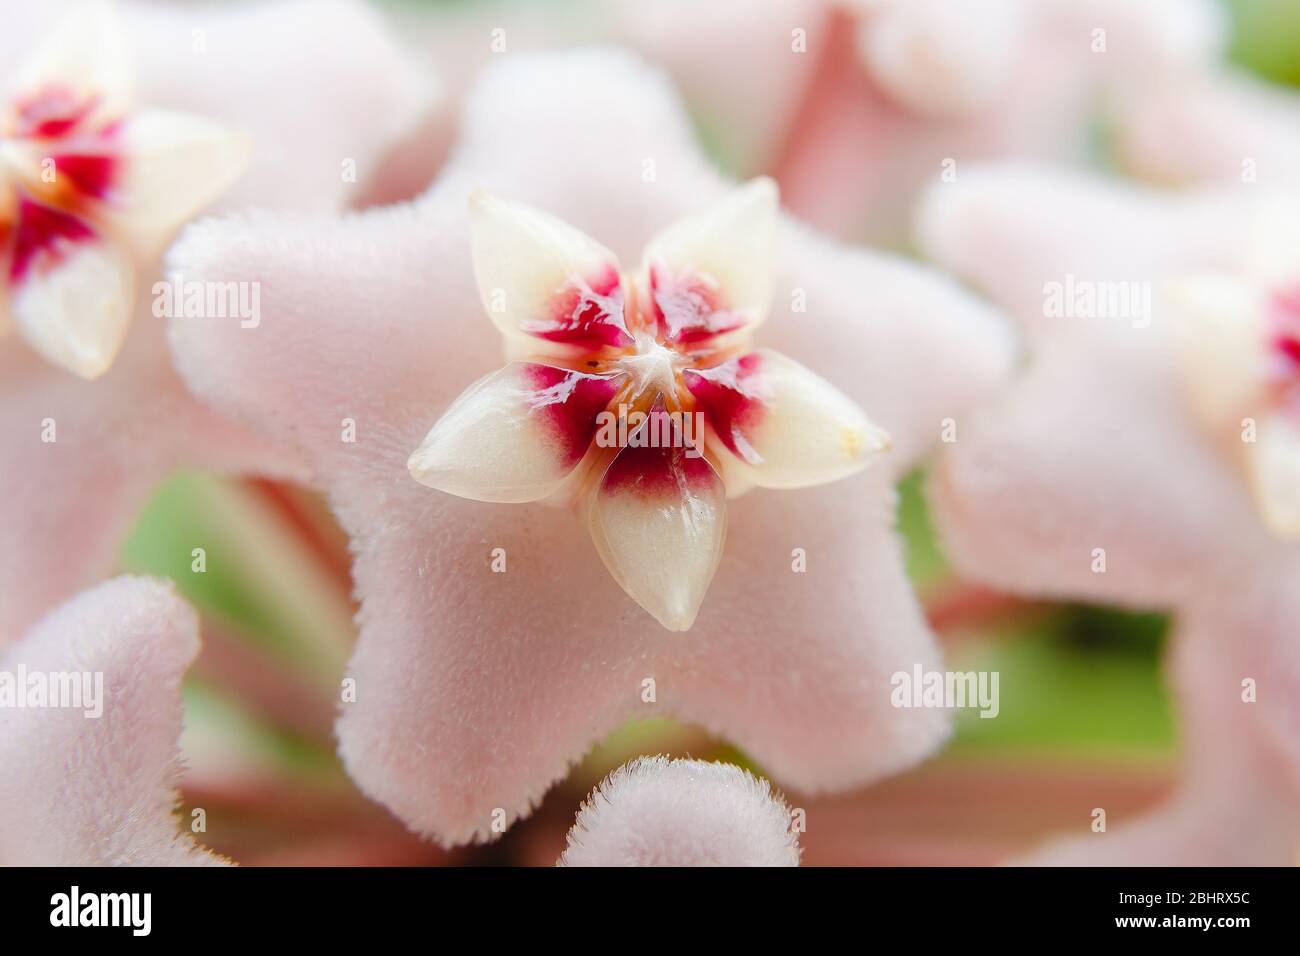 Fiore a forma di stella, Hoya Carnosa, noto anche come fiore di porcellana o pianta di cera. Foto macro sul fiore. Foto Stock